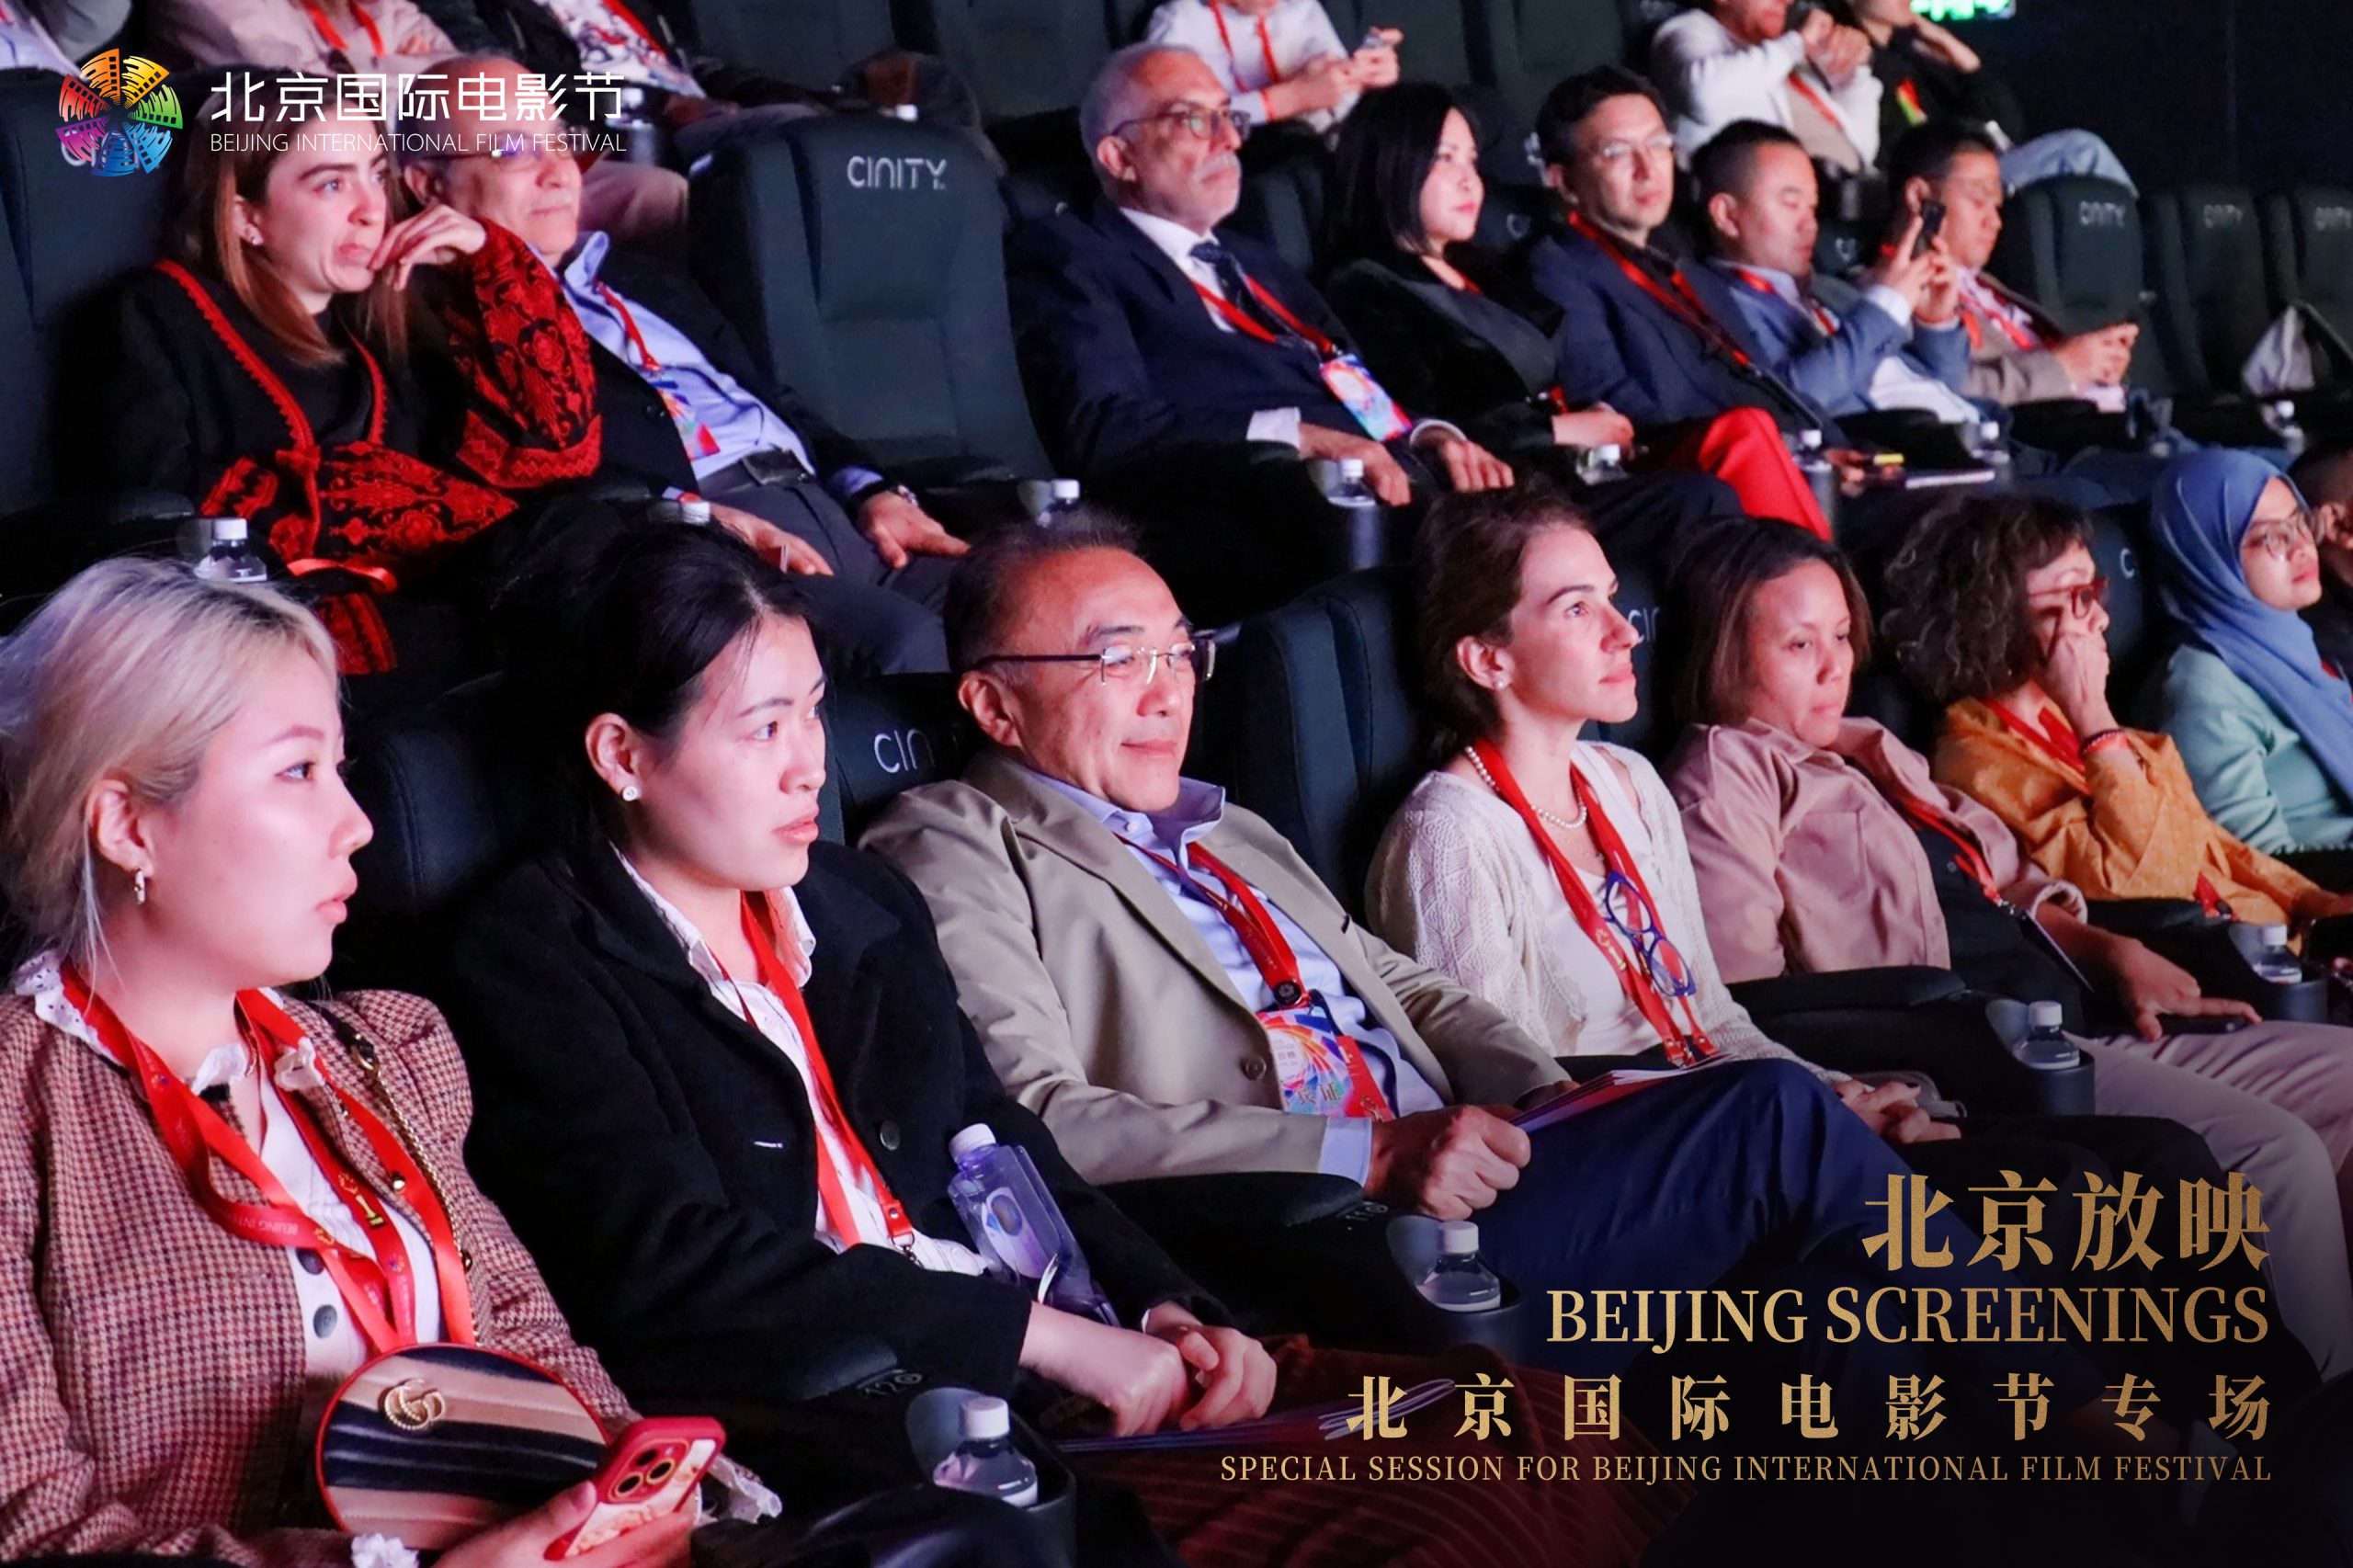 ‘Beijing Screenings’ event explores potential of overseas markets